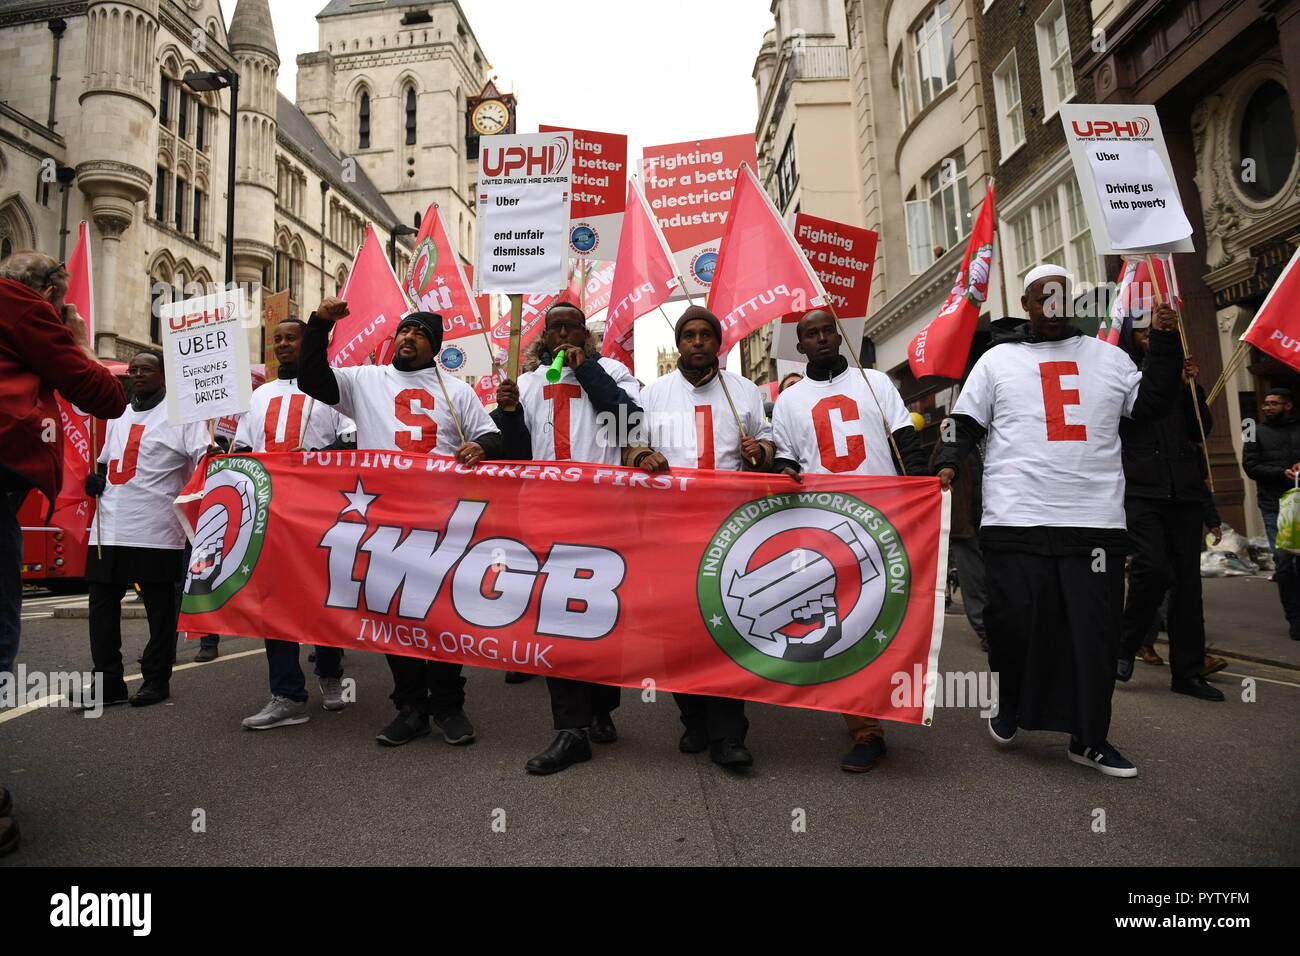 Controladores Uber protesta fuera de las Cortes Reales de Justicia, Londres, antes de una decisión sobre sus derechos laborales. Foto de stock